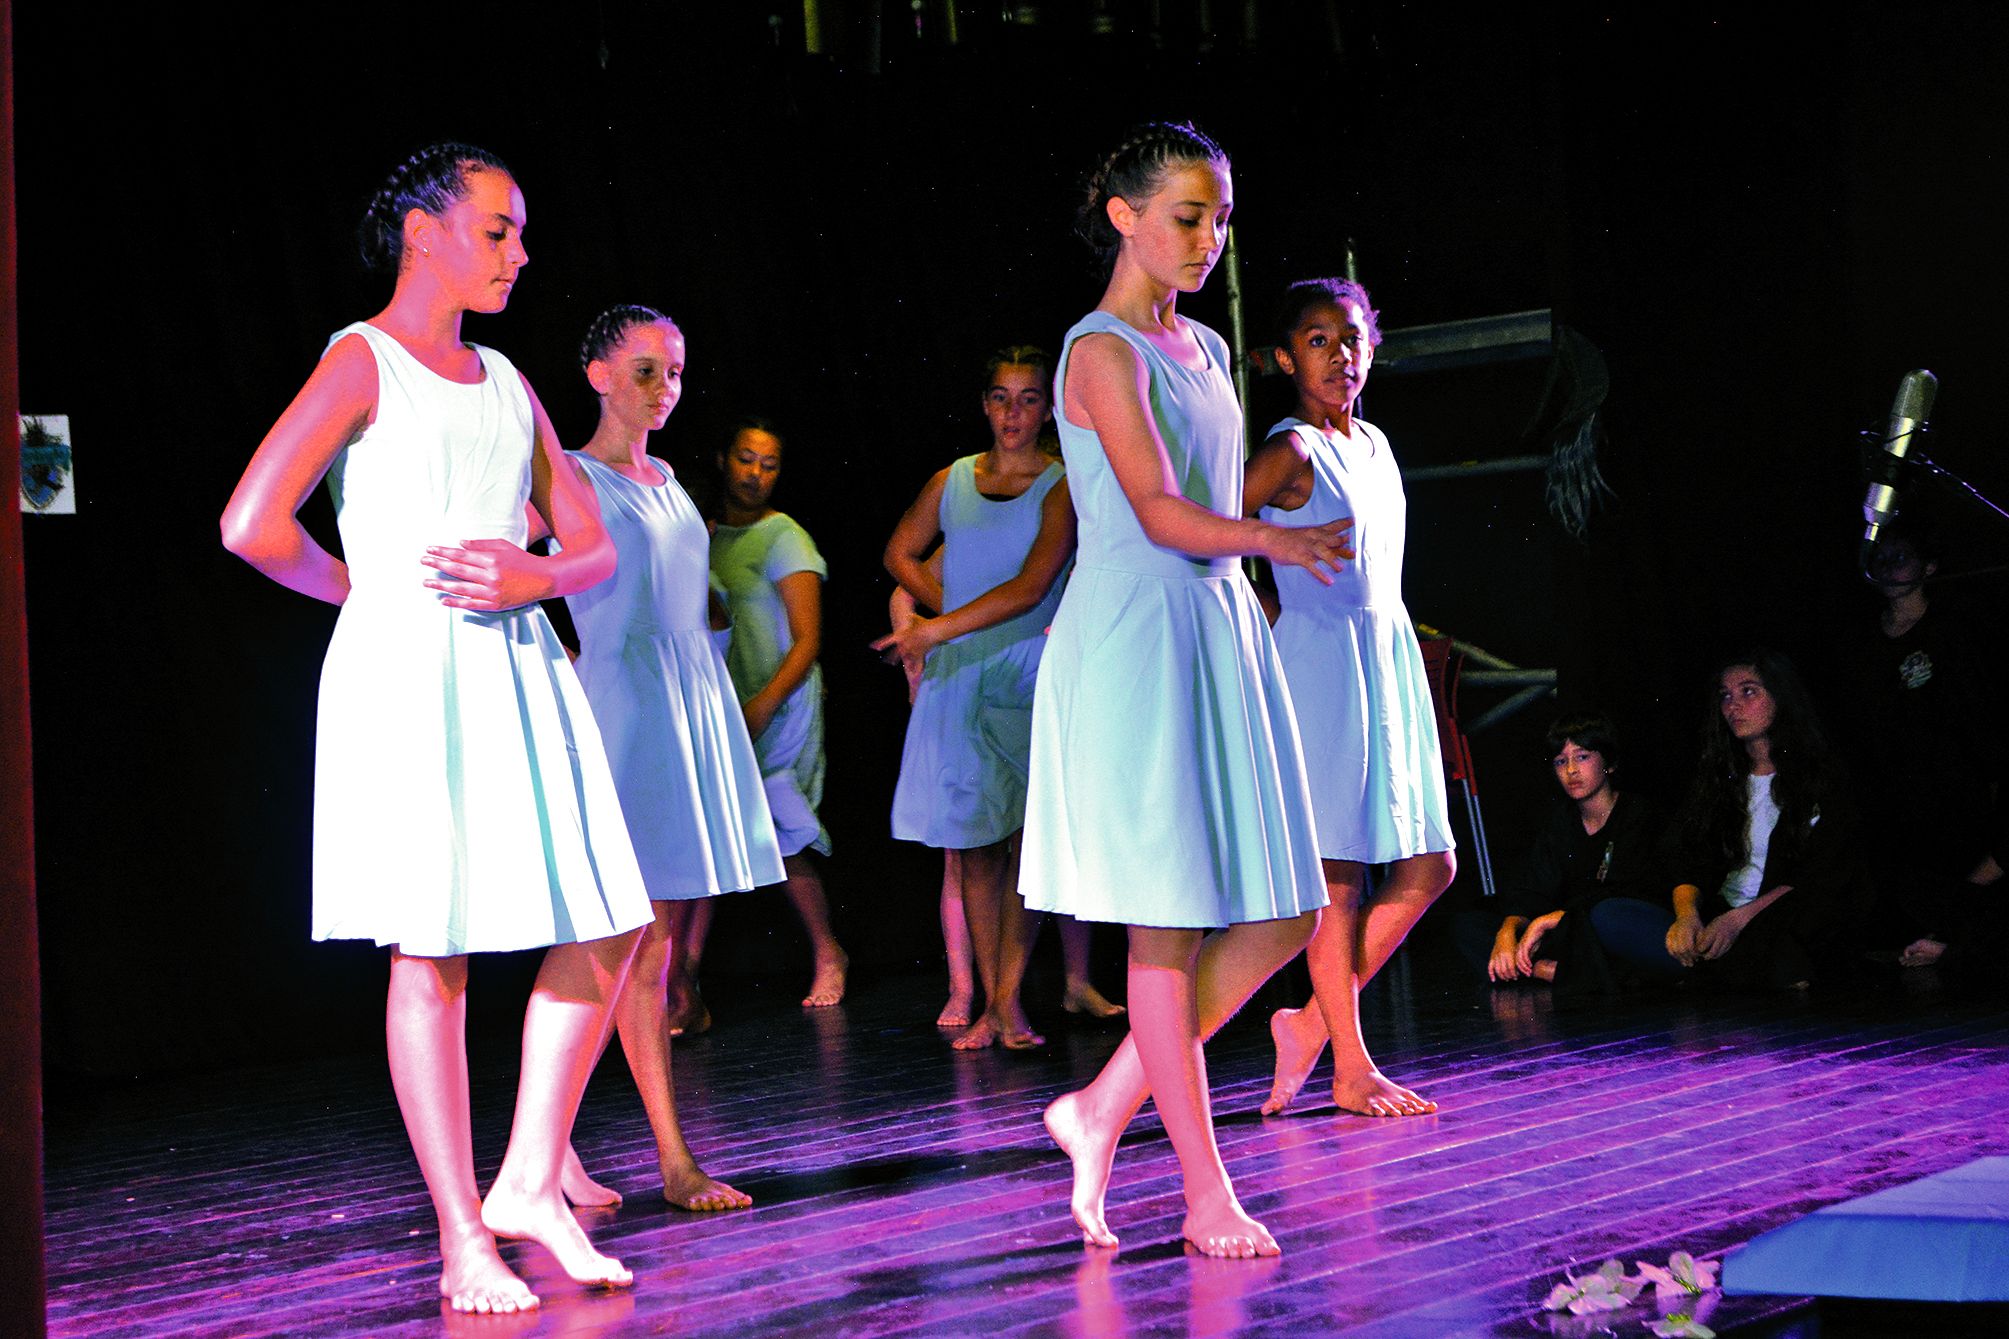 Les jeunes danseuses ont fait leur entrée sur scène au milieu du spectacle. Elles ont charmé l’auditoire par leur grâce.